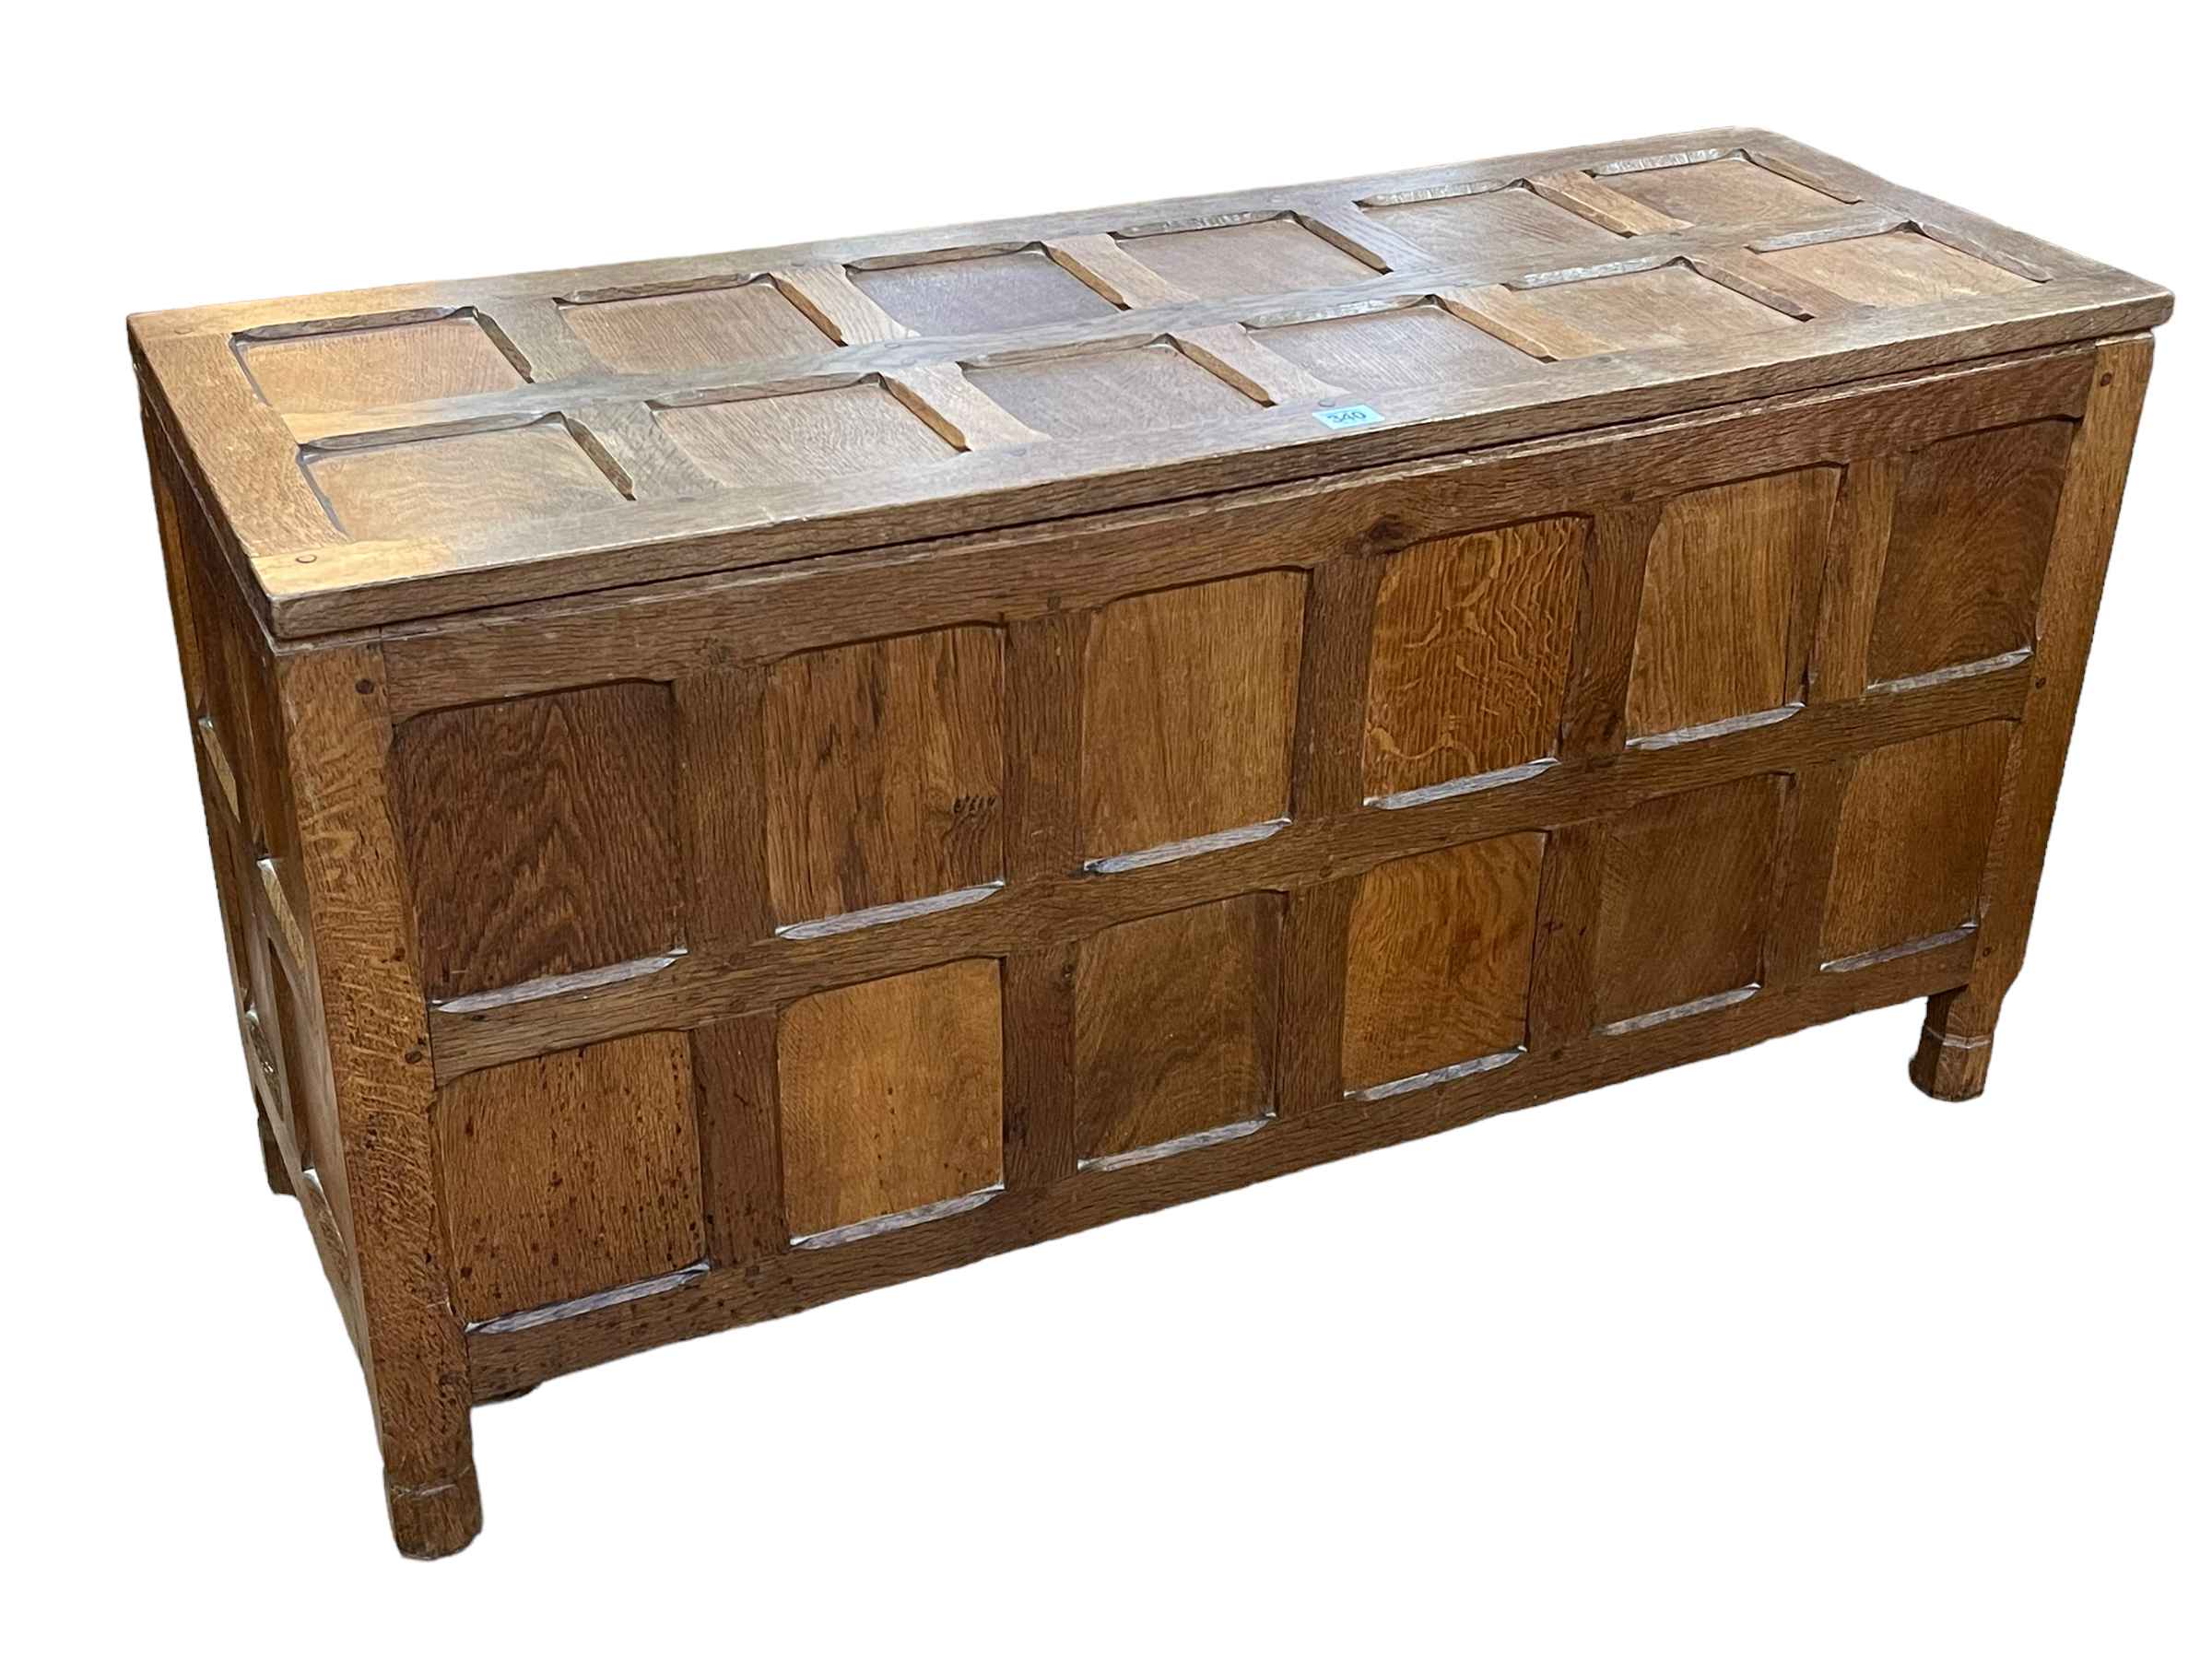 Sid Pollard adzed oak storage chest/blanket box, 56cm by 108.5cm by 39.5cm.